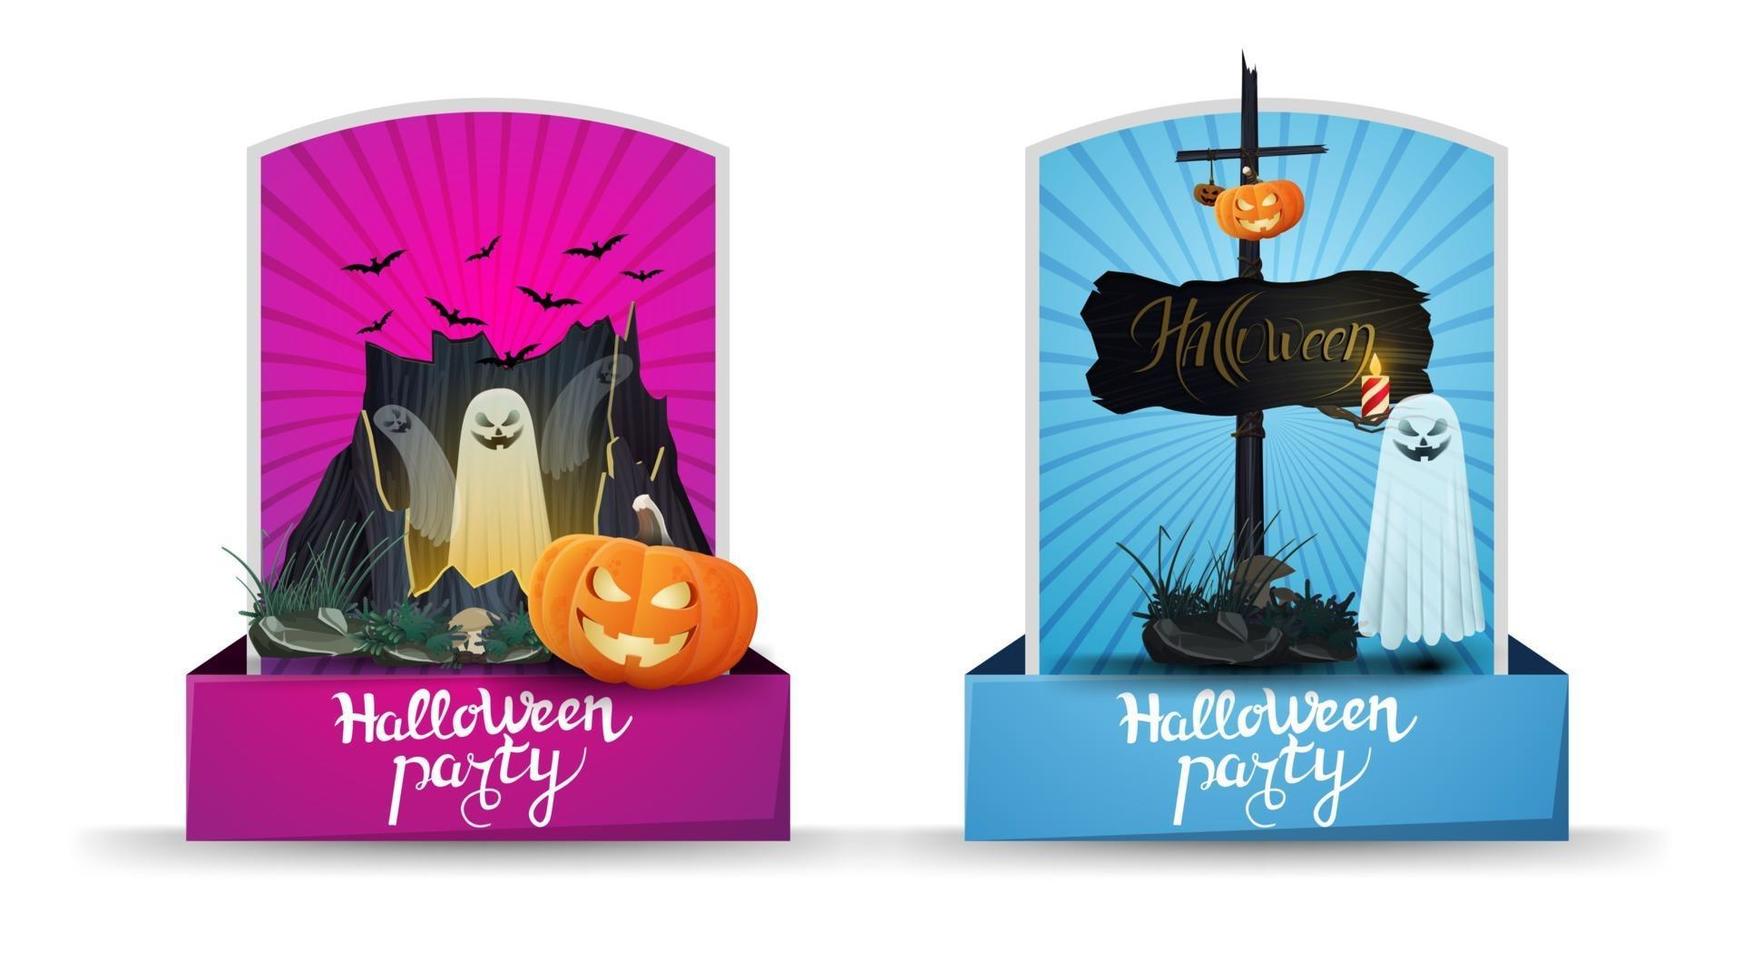 fiesta de halloween, dos tarjetas verticales de invitación con portal con fantasmas, gato de calabaza y cartel de madera antiguo con gato de calabaza adjunto. tarjetas de invitación rosadas y azules vector